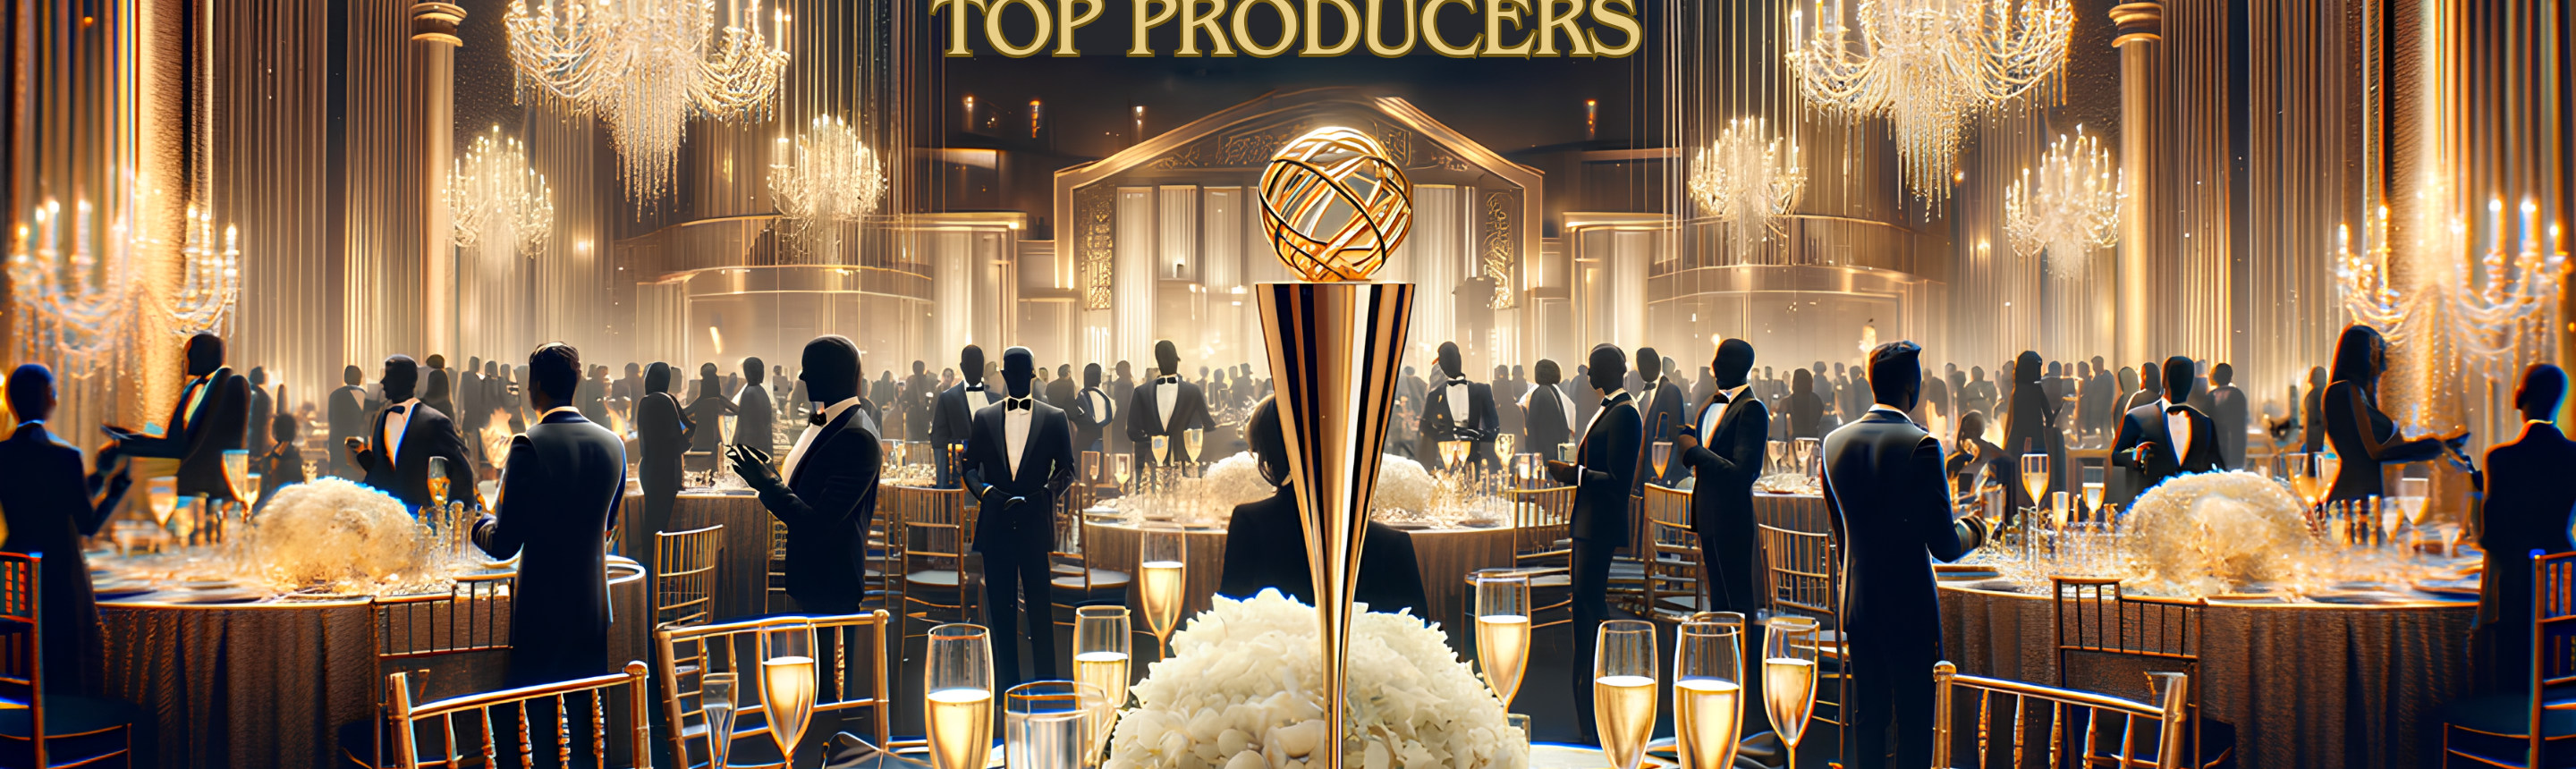 WMBOR Top Producers